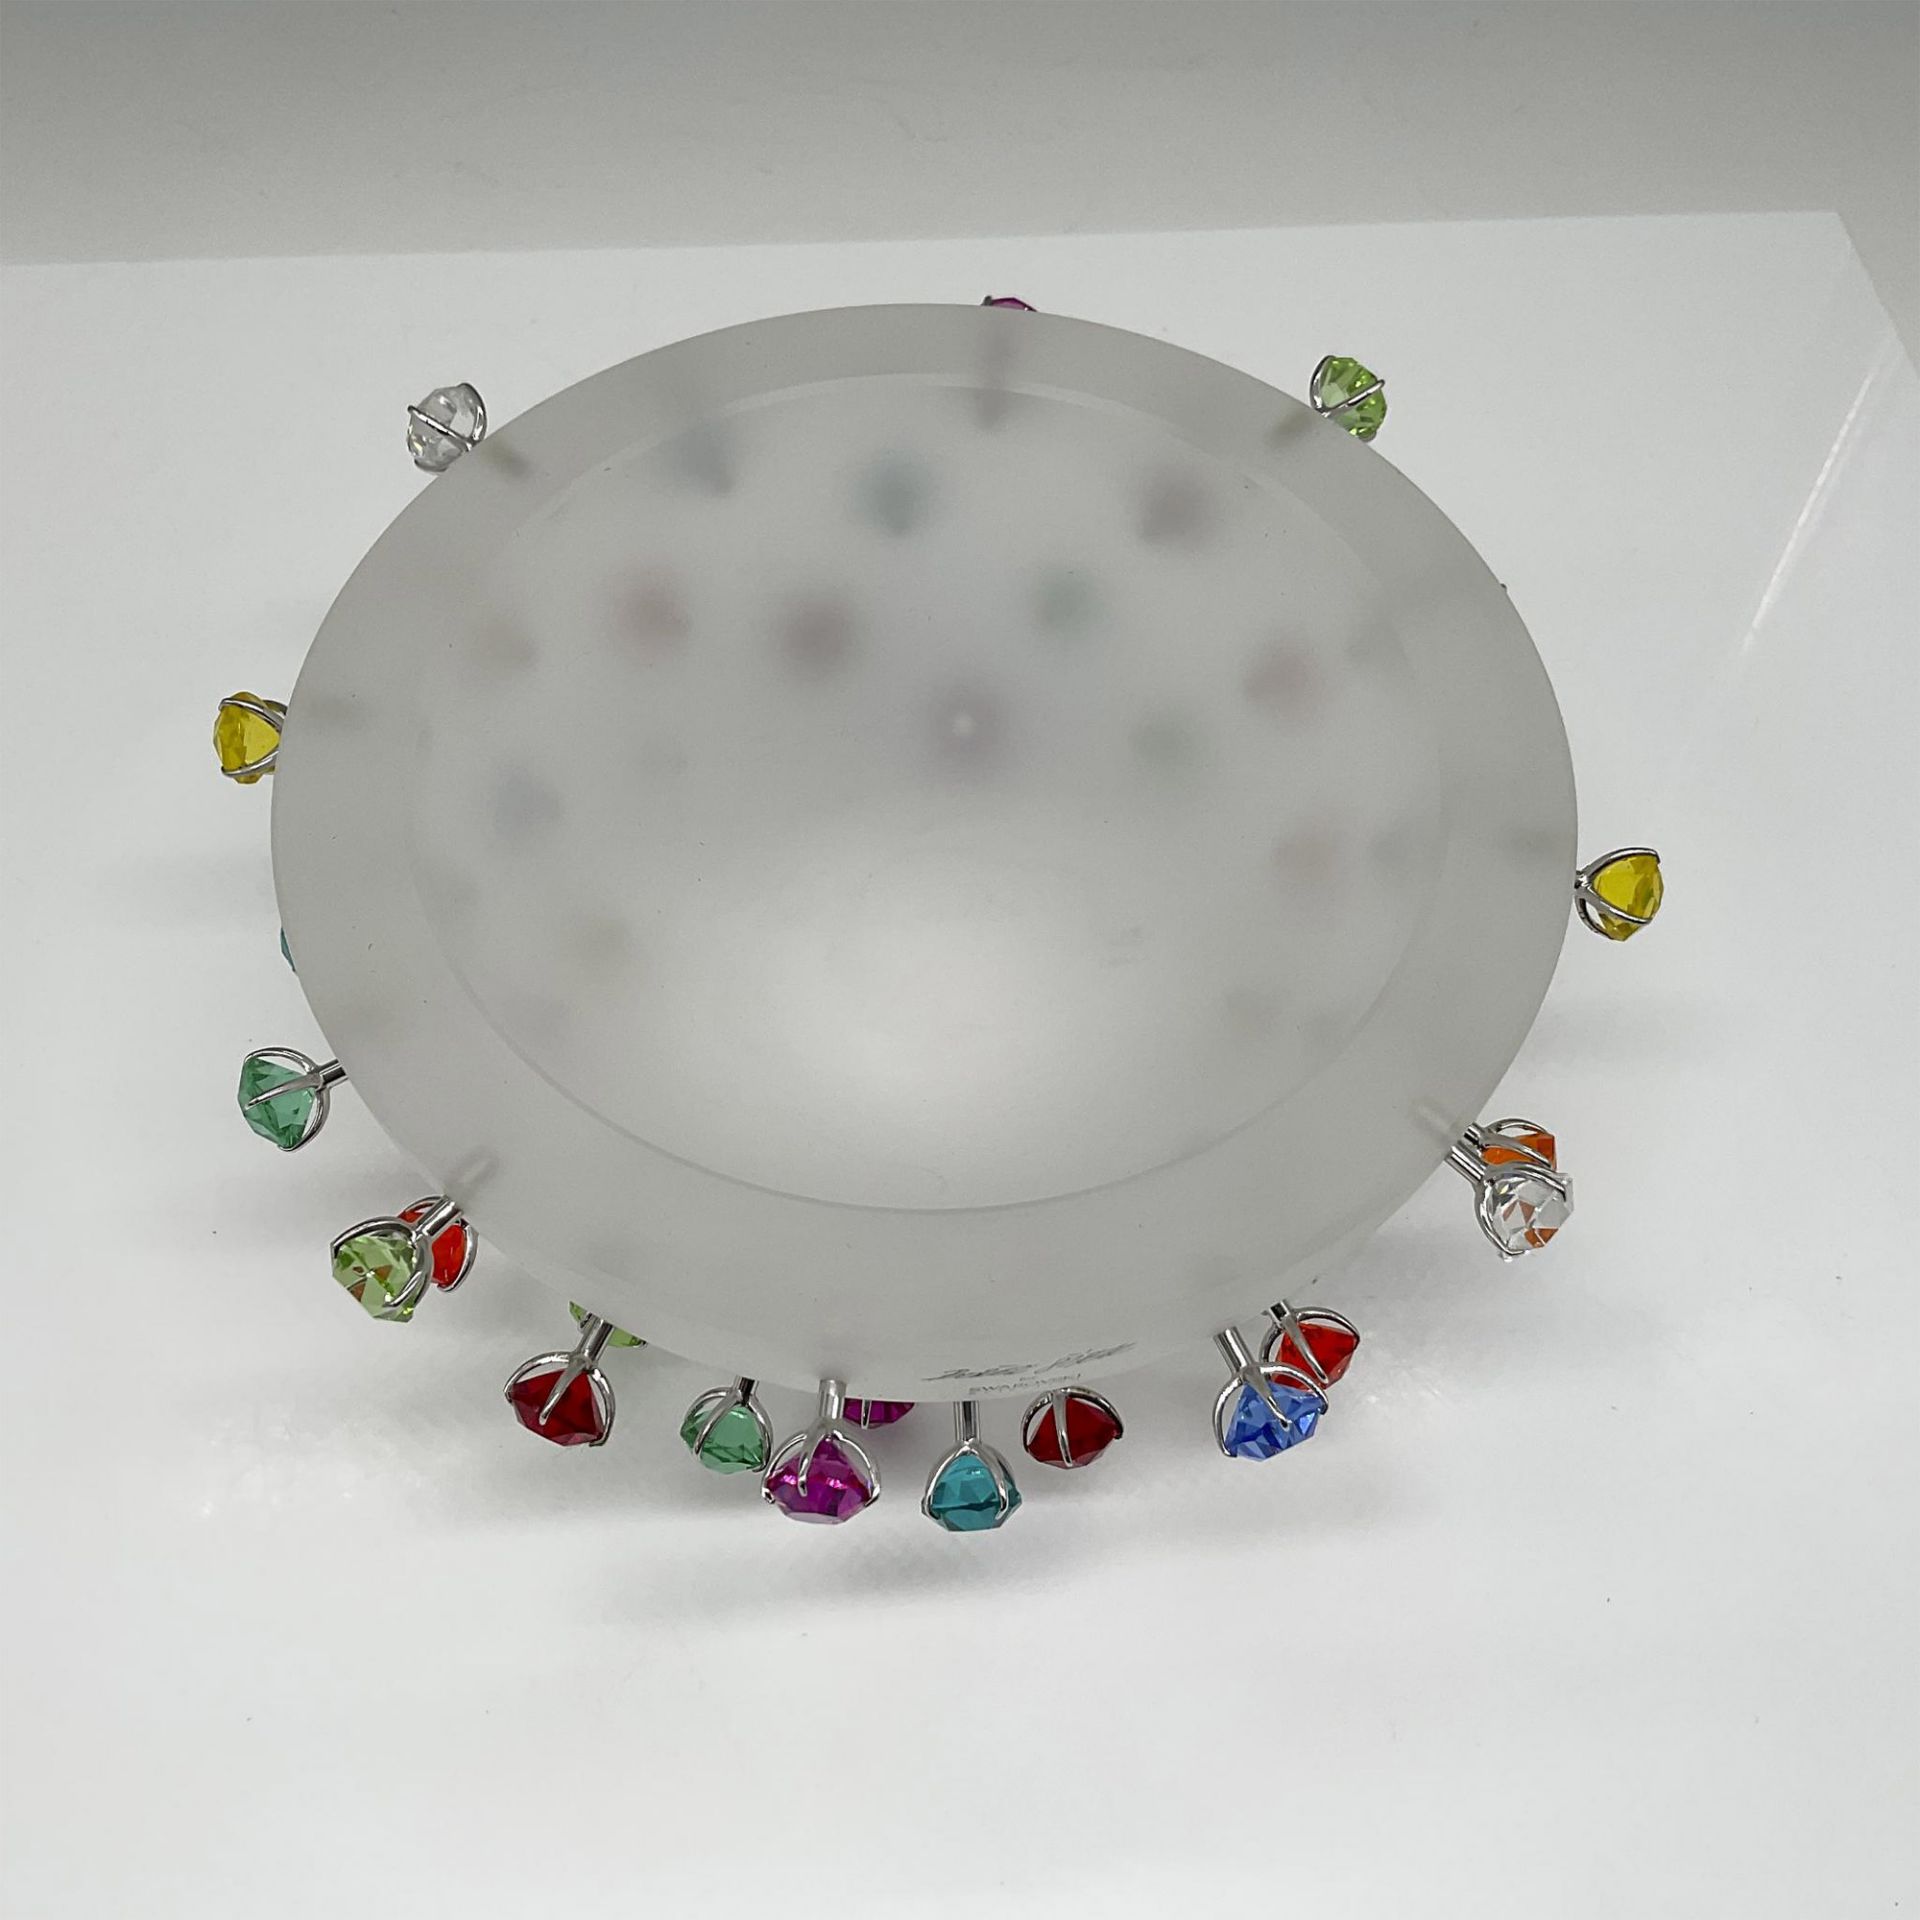 Borek Sipek for Swarovski Selection Crystal Bowl, Apollo - Image 2 of 4